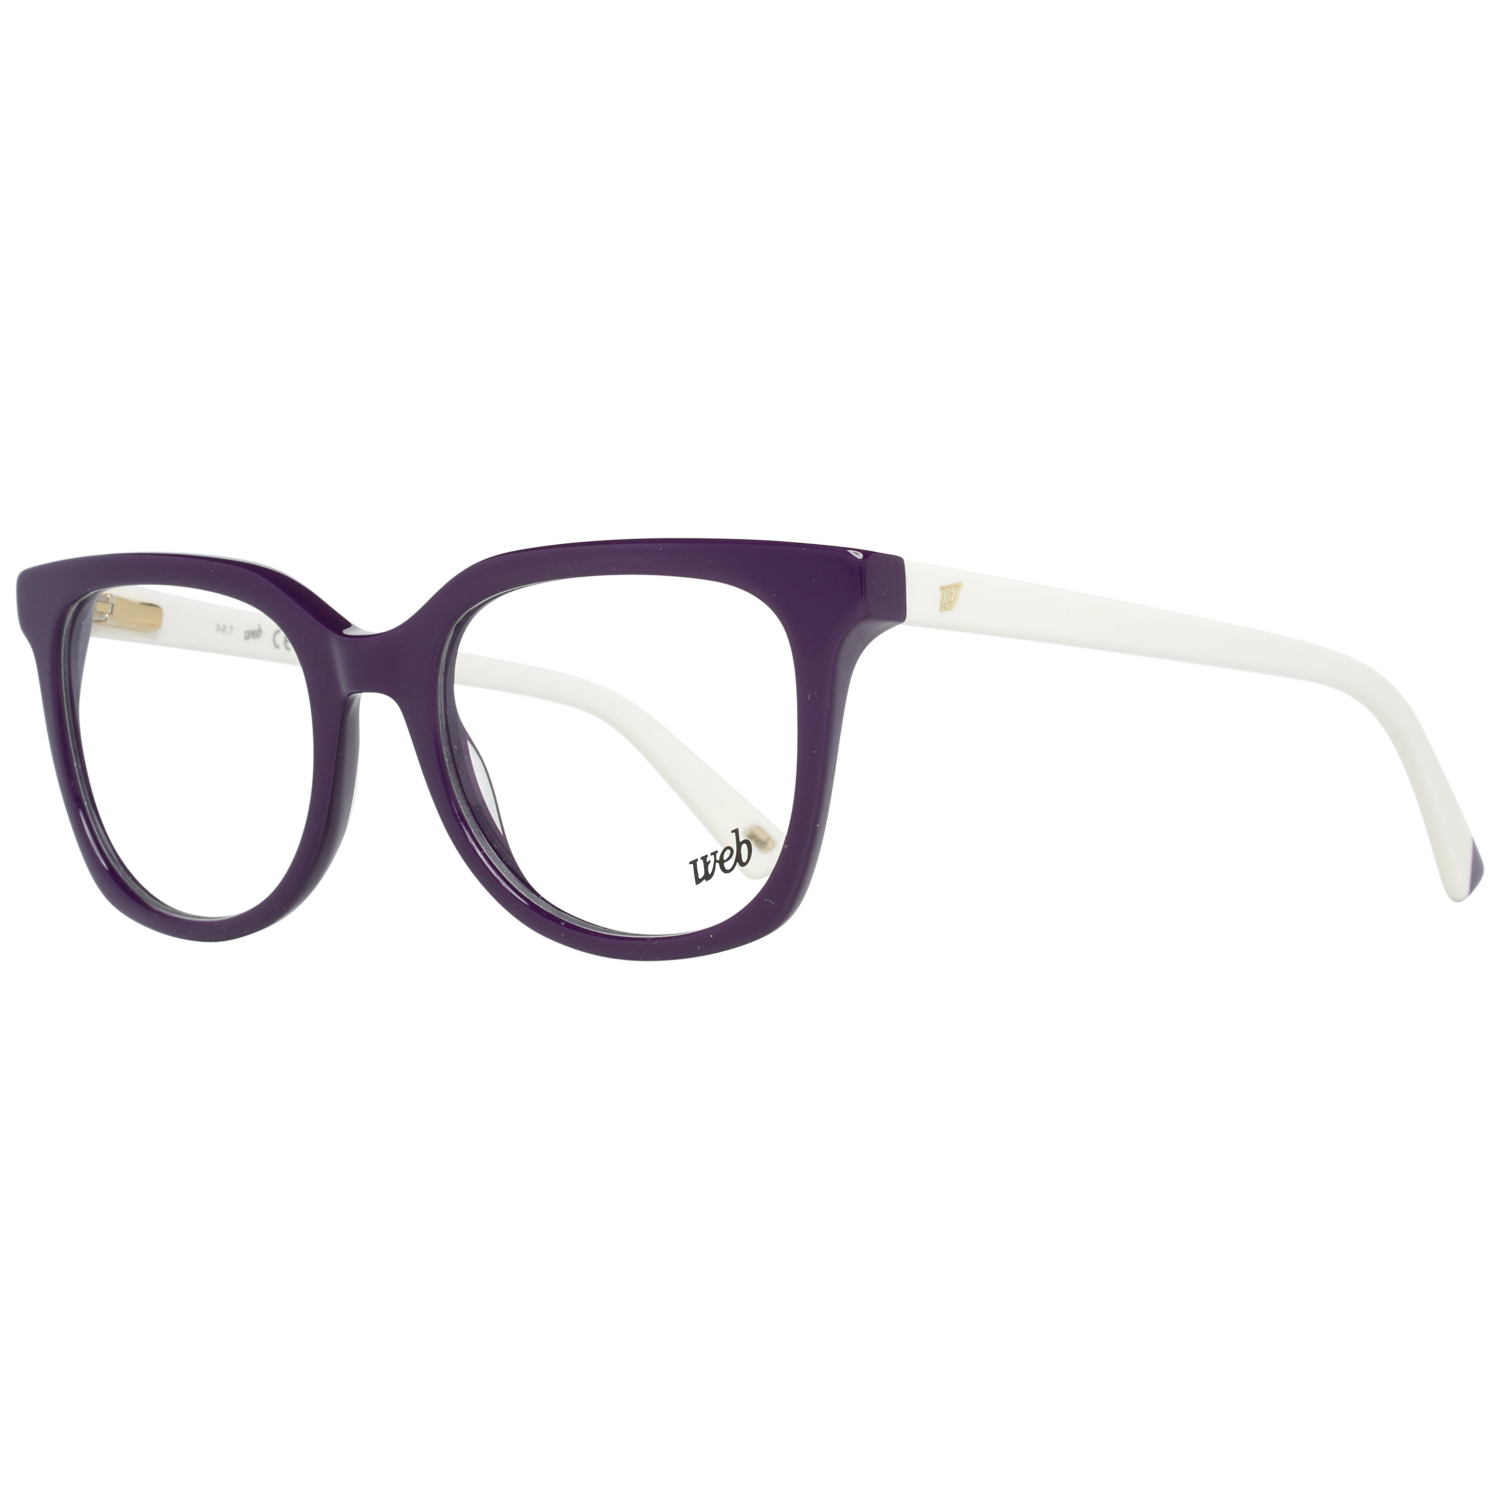 Web Frames Web Glasses Optical Frame WE5260 083 49 Eyeglasses Eyewear UK USA Australia 